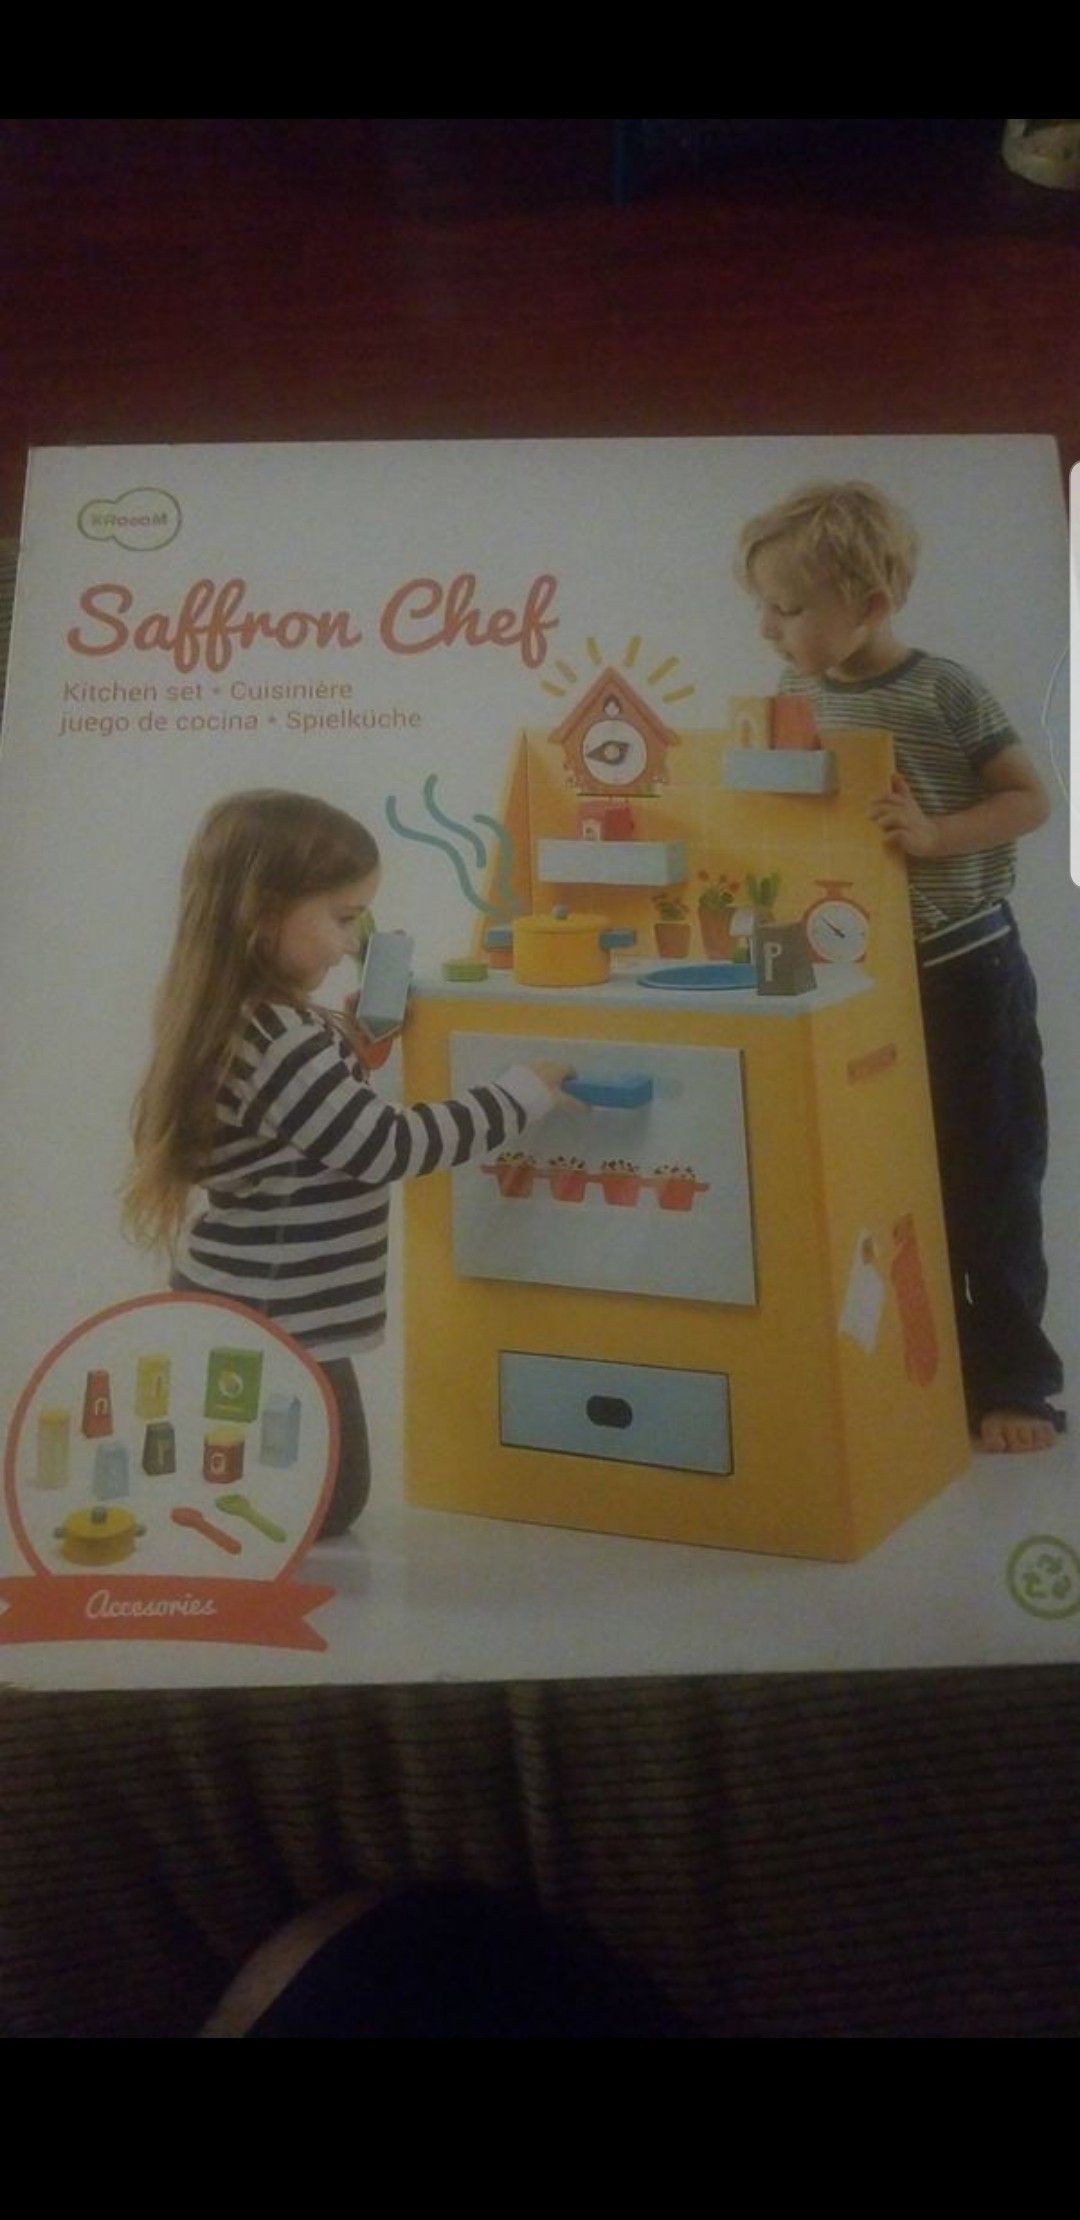 Saffron chef kitchen set